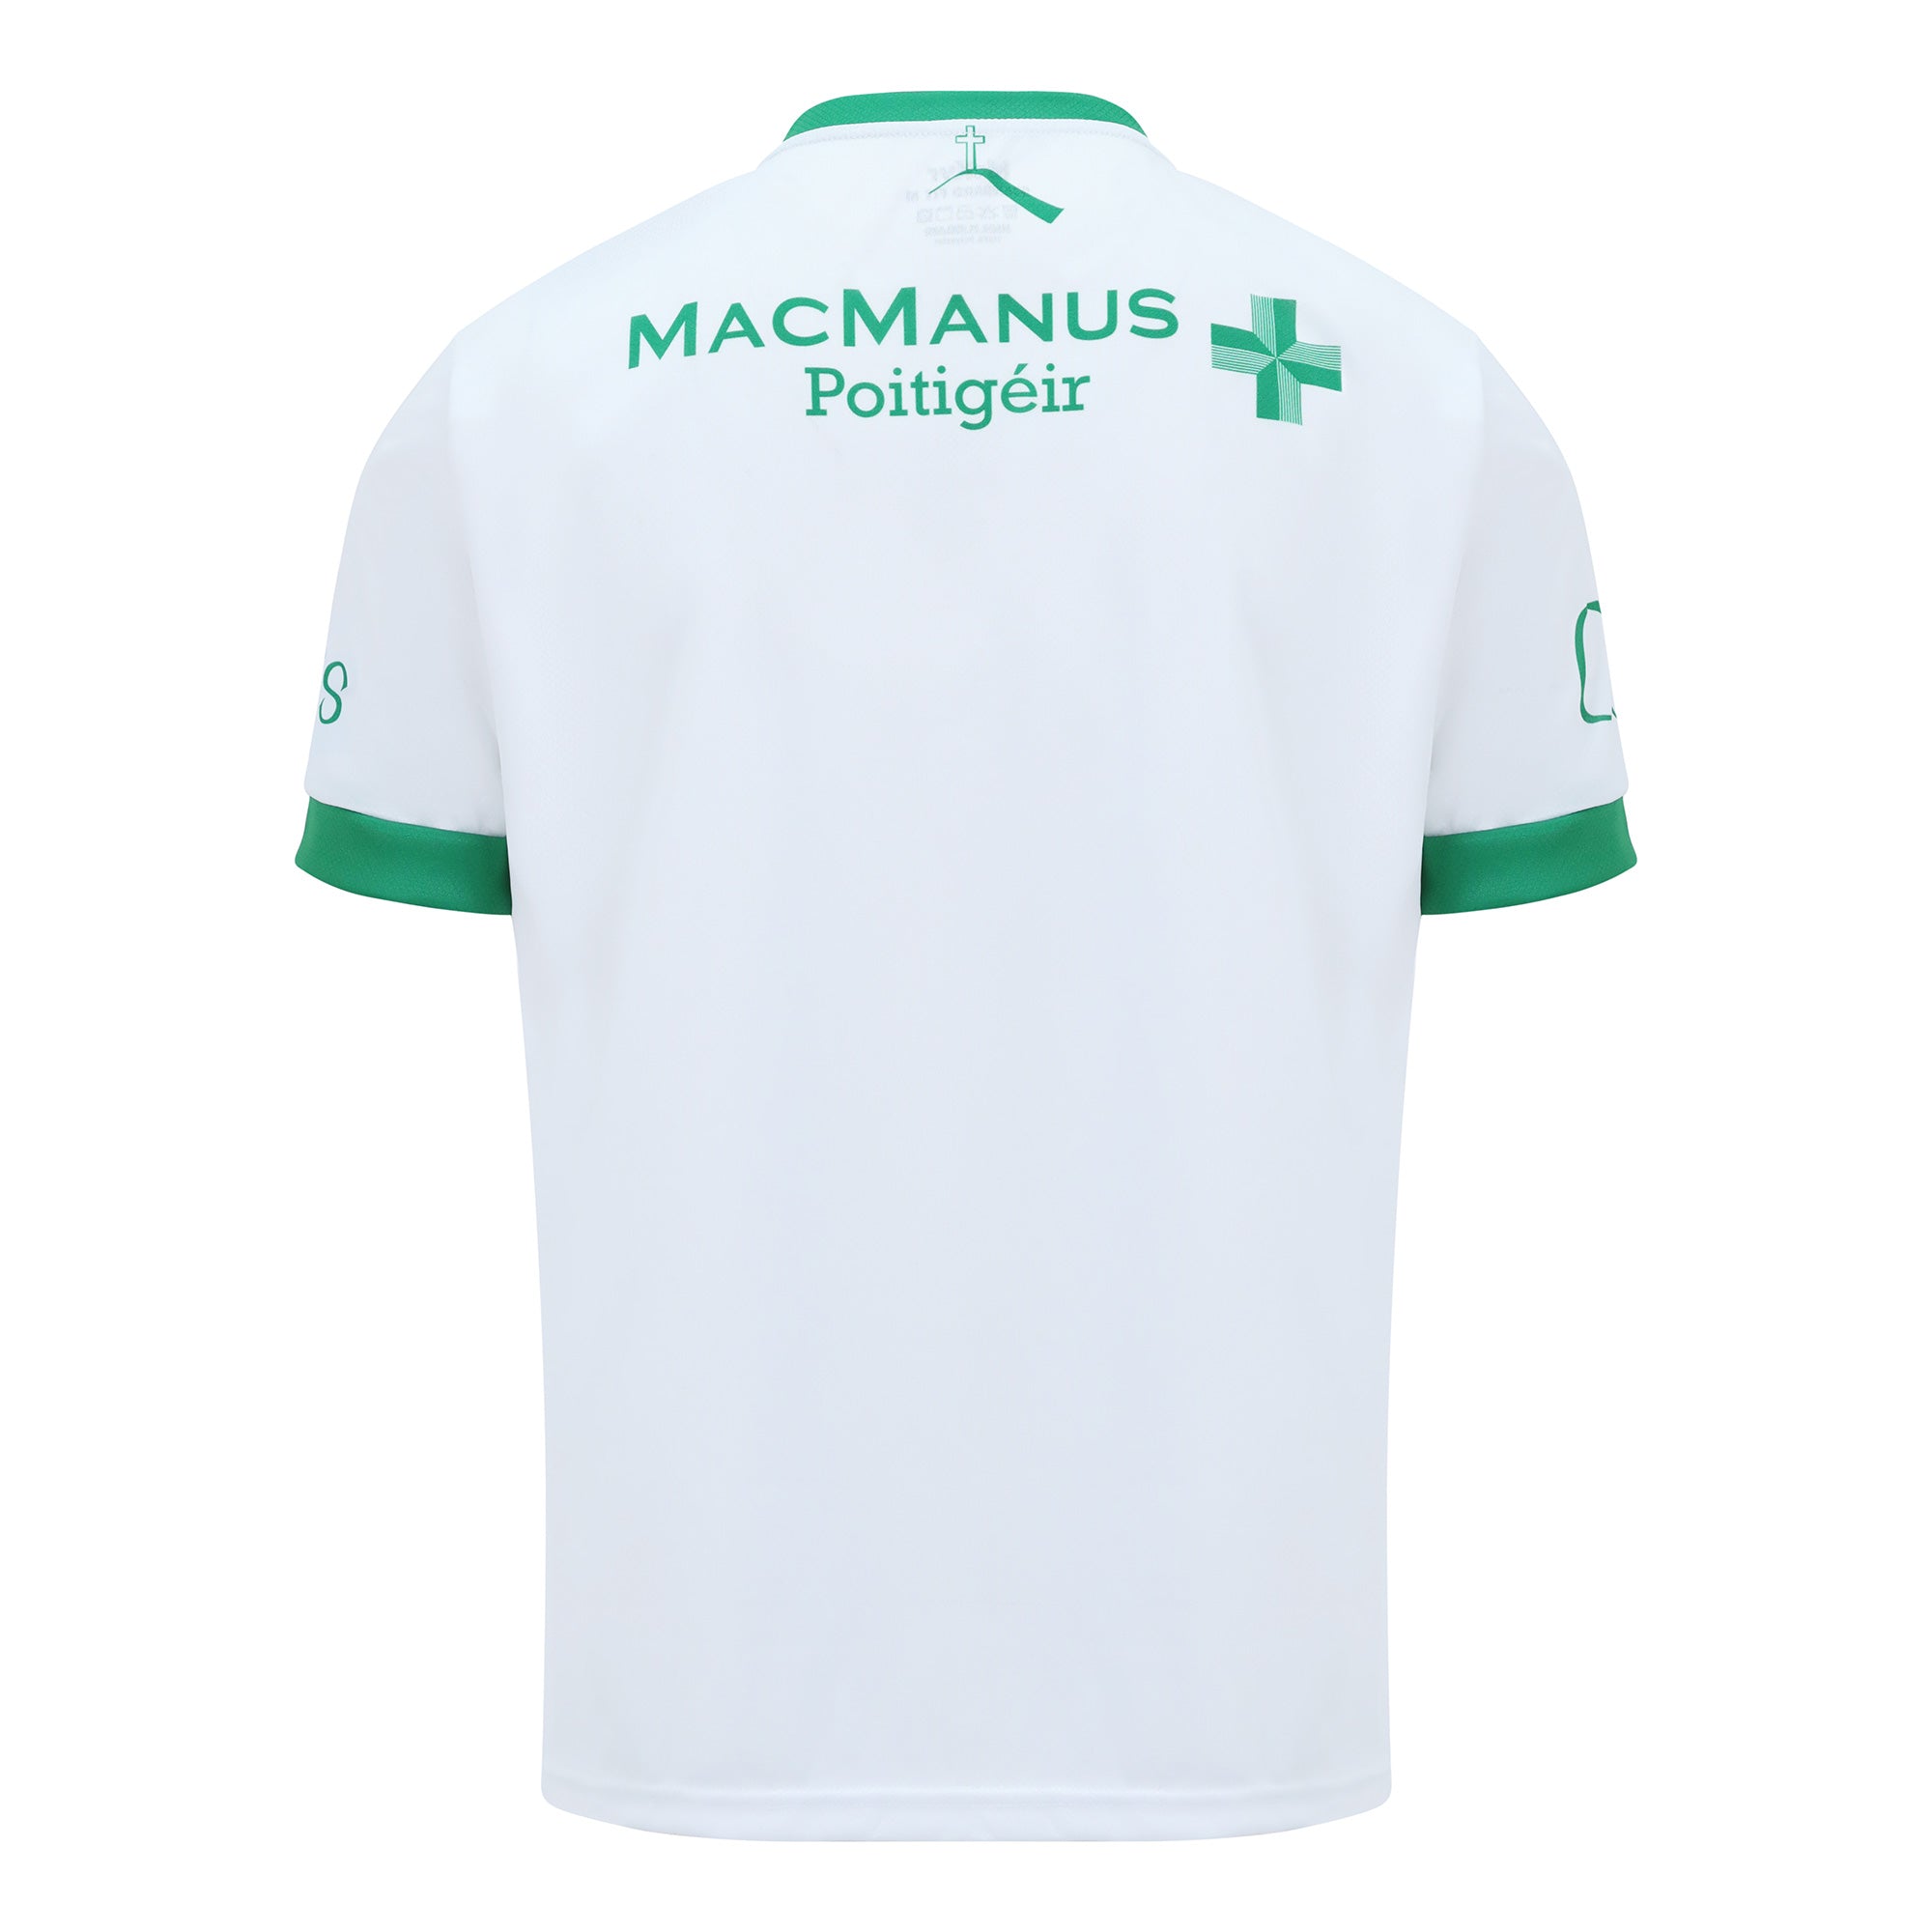 Mc Keever Leitrim GAA Official Goalkeeper Jersey - Kids - White/Green/Gold